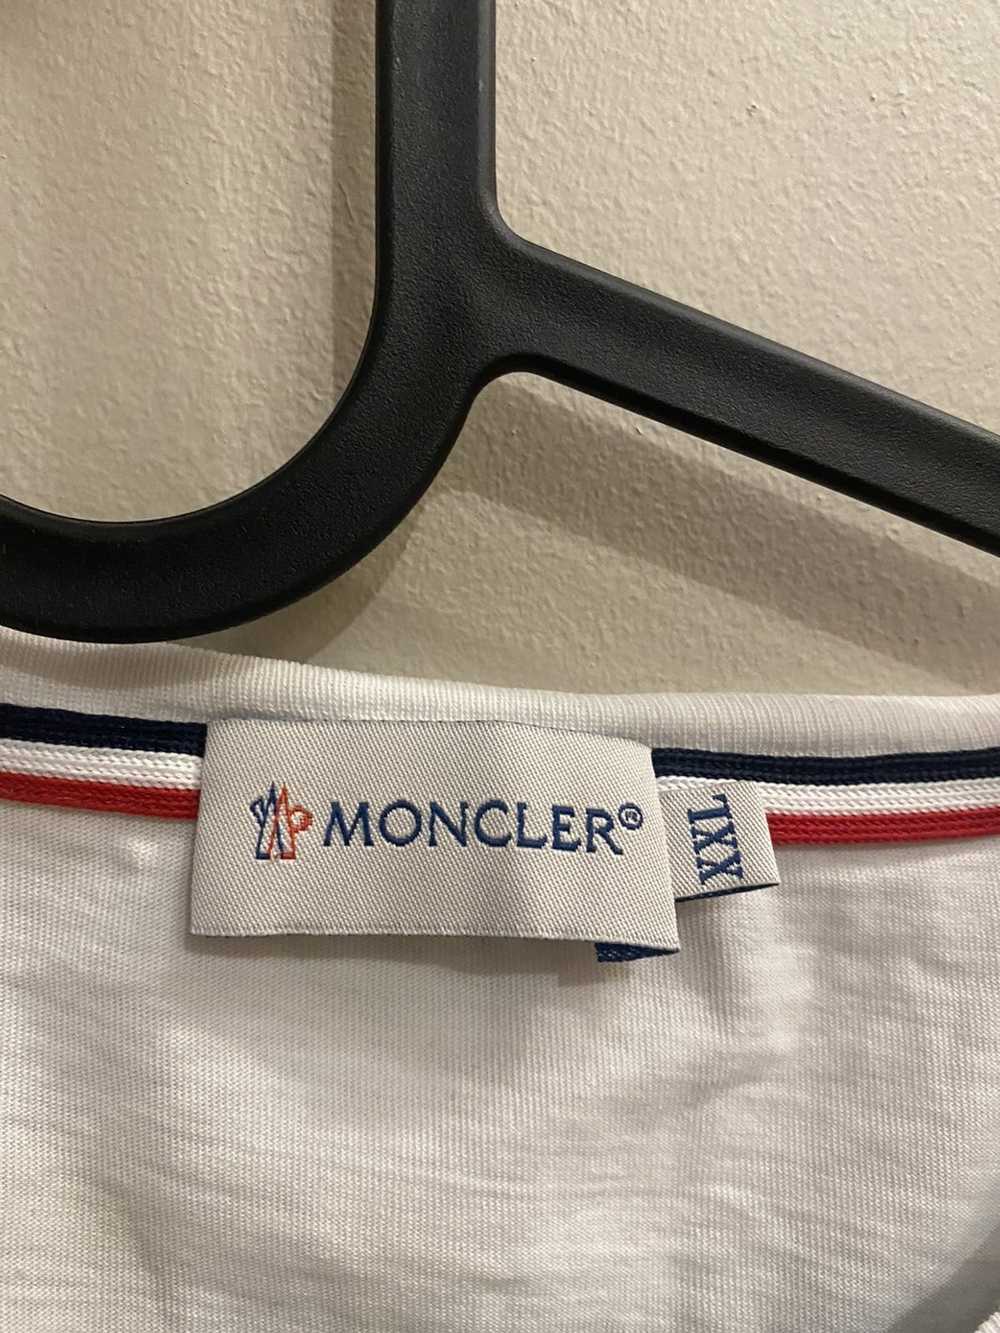 Moncler Moncler mini logo pocket tee - image 2